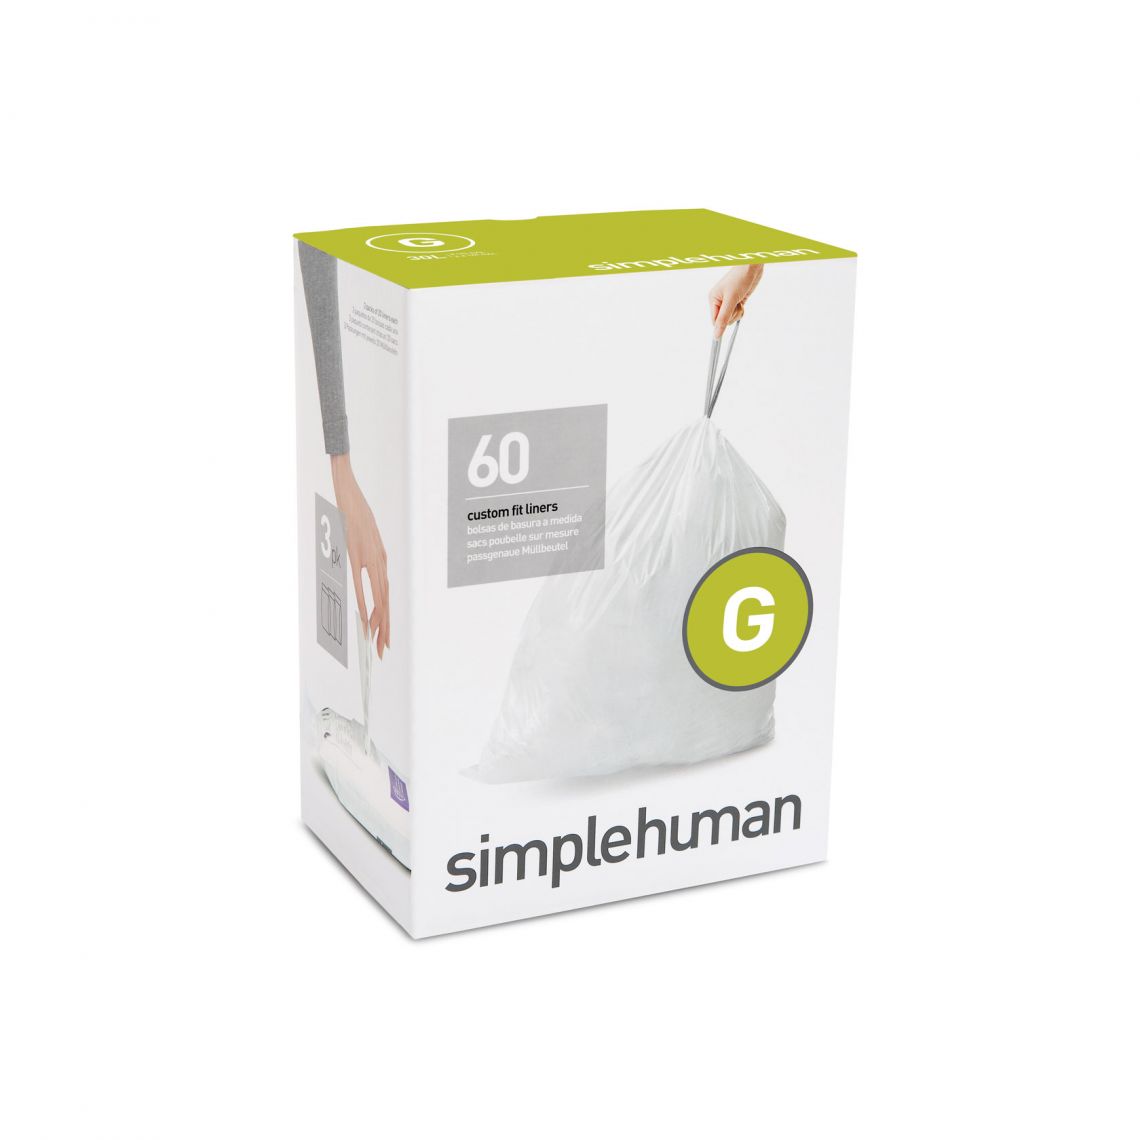 מארז 360 שקיות אשפה לפח 30 ליטר (G) דגם Simplehuman - CW0257 - סימפליומן